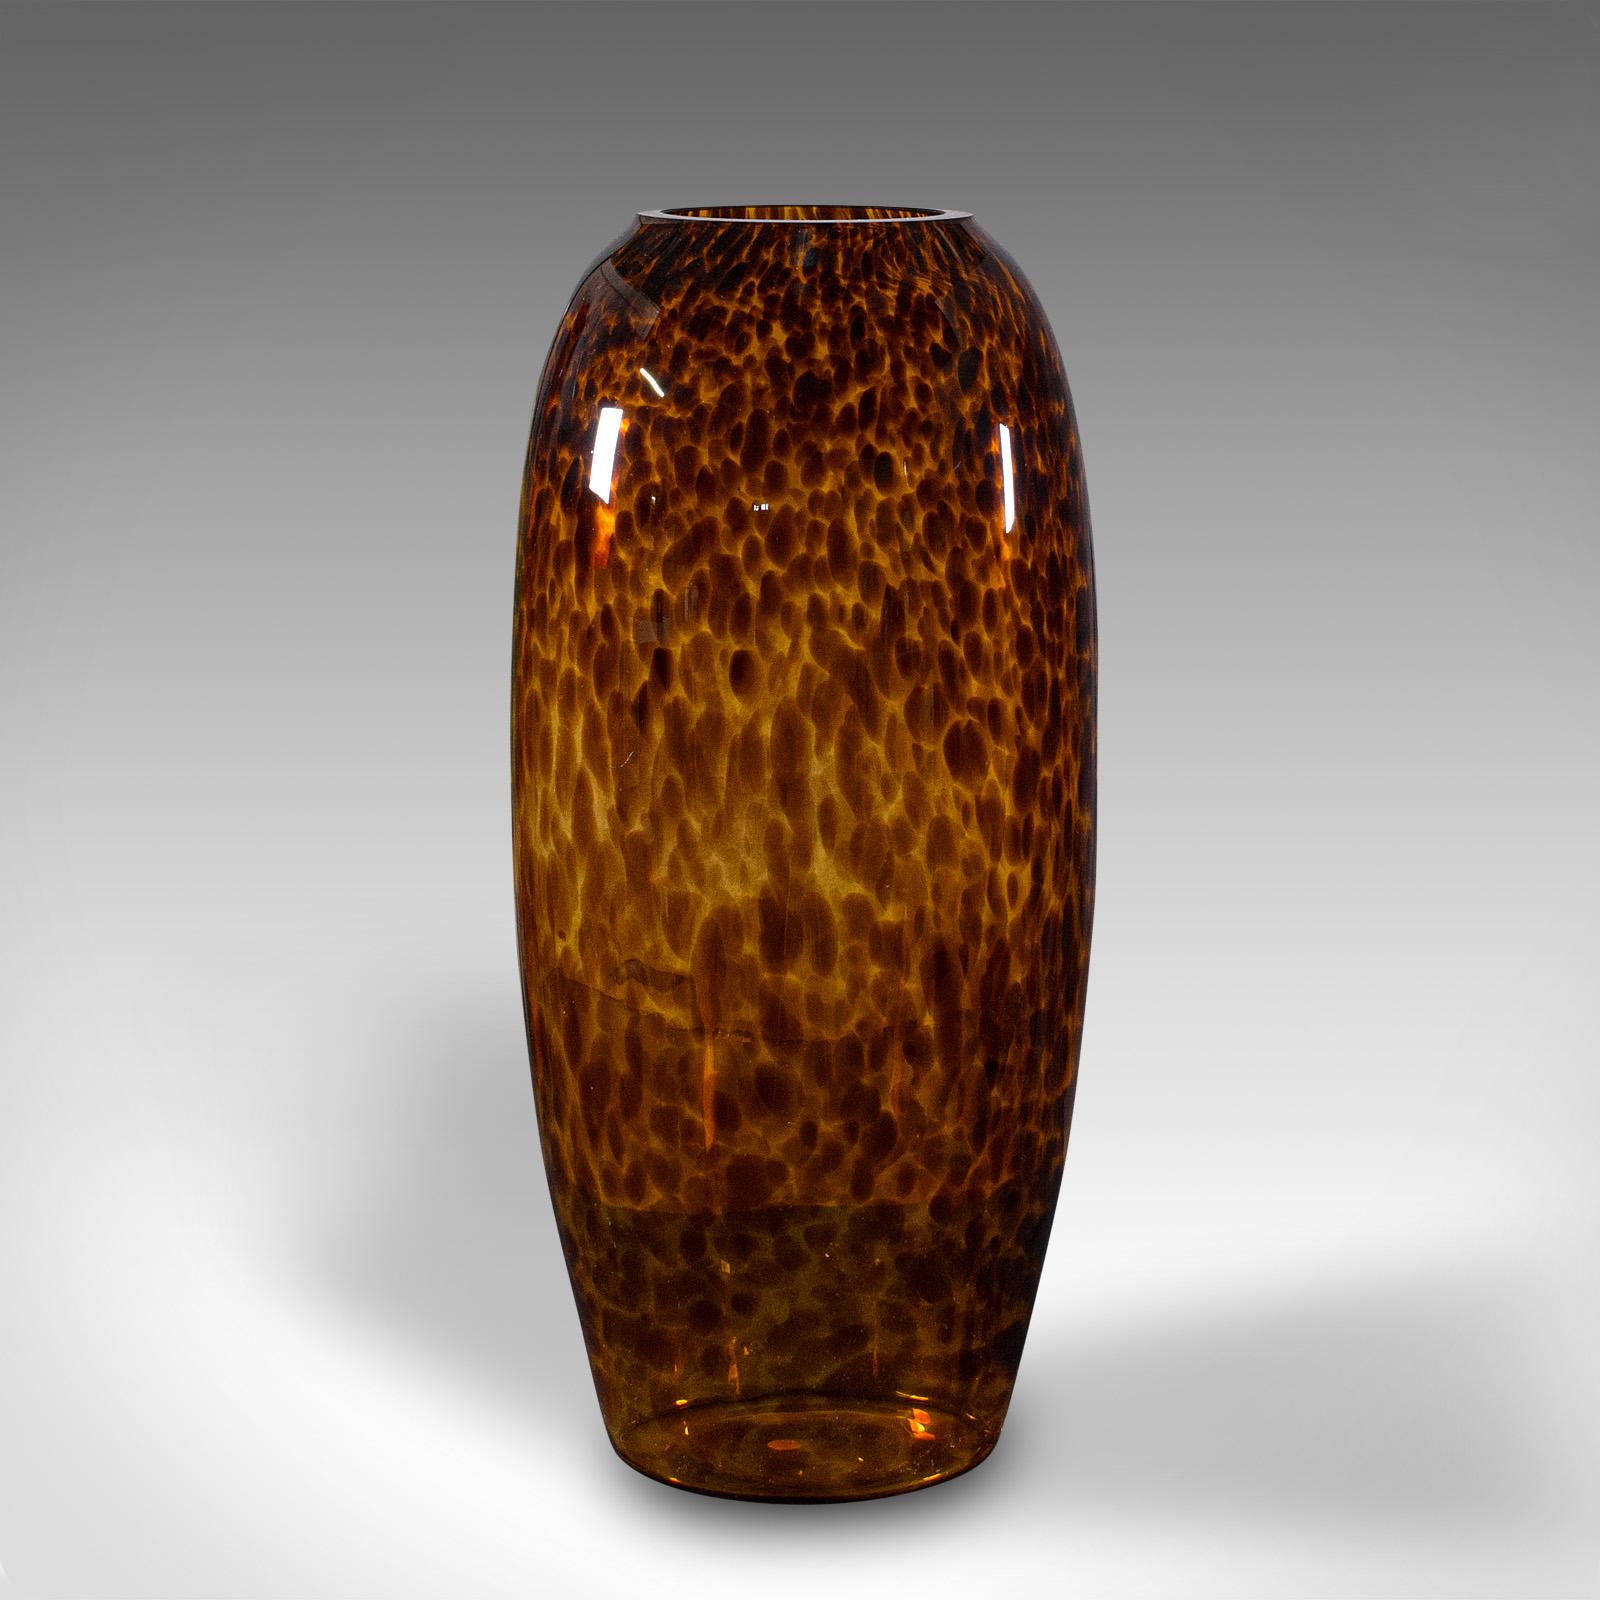 Dies ist eine hohe bernsteinfarbene Vintage-Vase. Eine italienische Blumenmanschette aus Kunstglas mit dekorativem Muster, aus dem späten 20. Jahrhundert, um 1970.

Auffallende Farbe und Form, ein reizvoller Ausdruck der Epoche
Zeigt eine